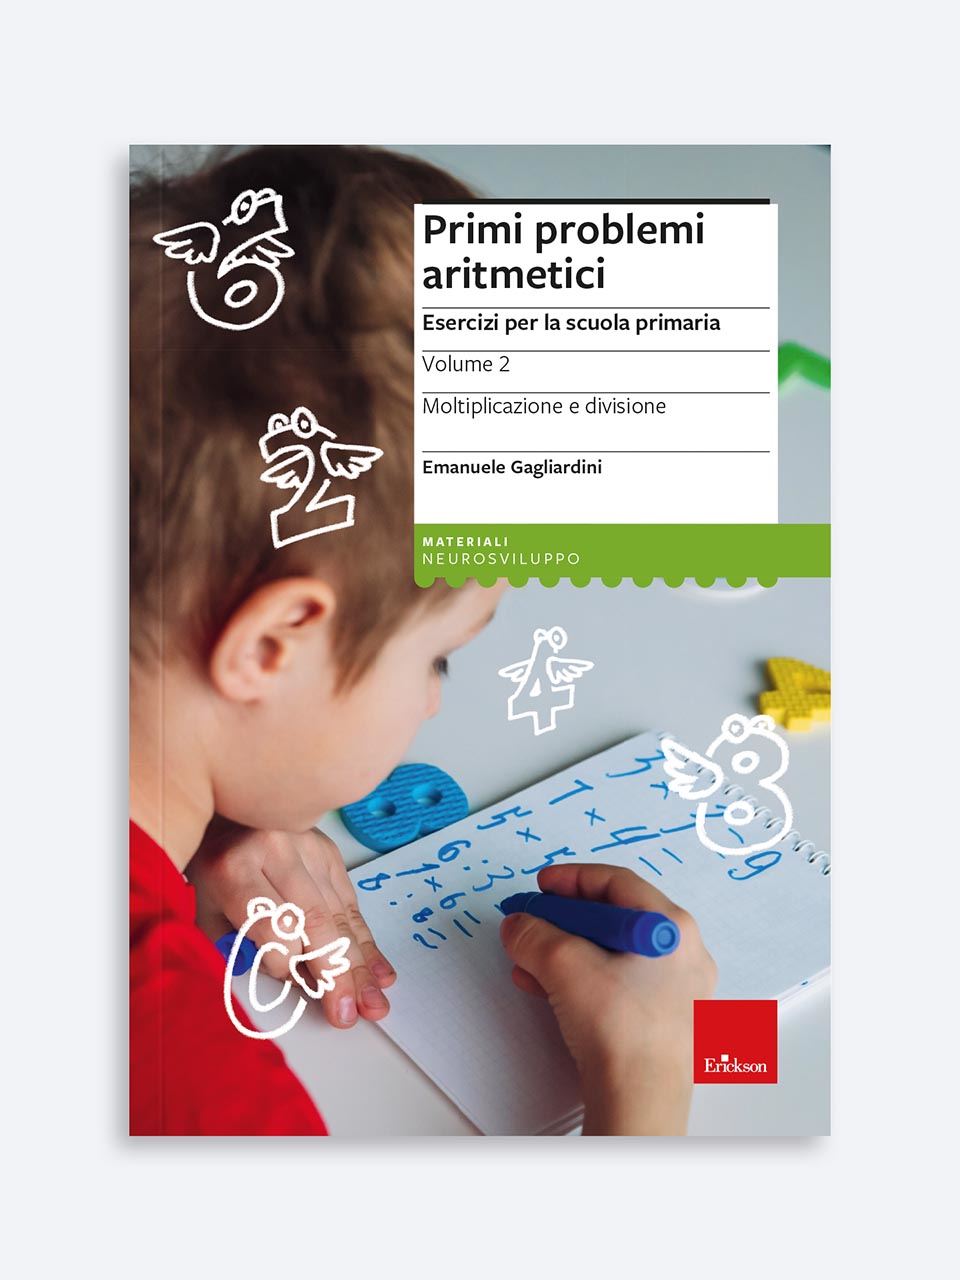 Primi problemi aritmetici - Libri - App e software - Erickson 3